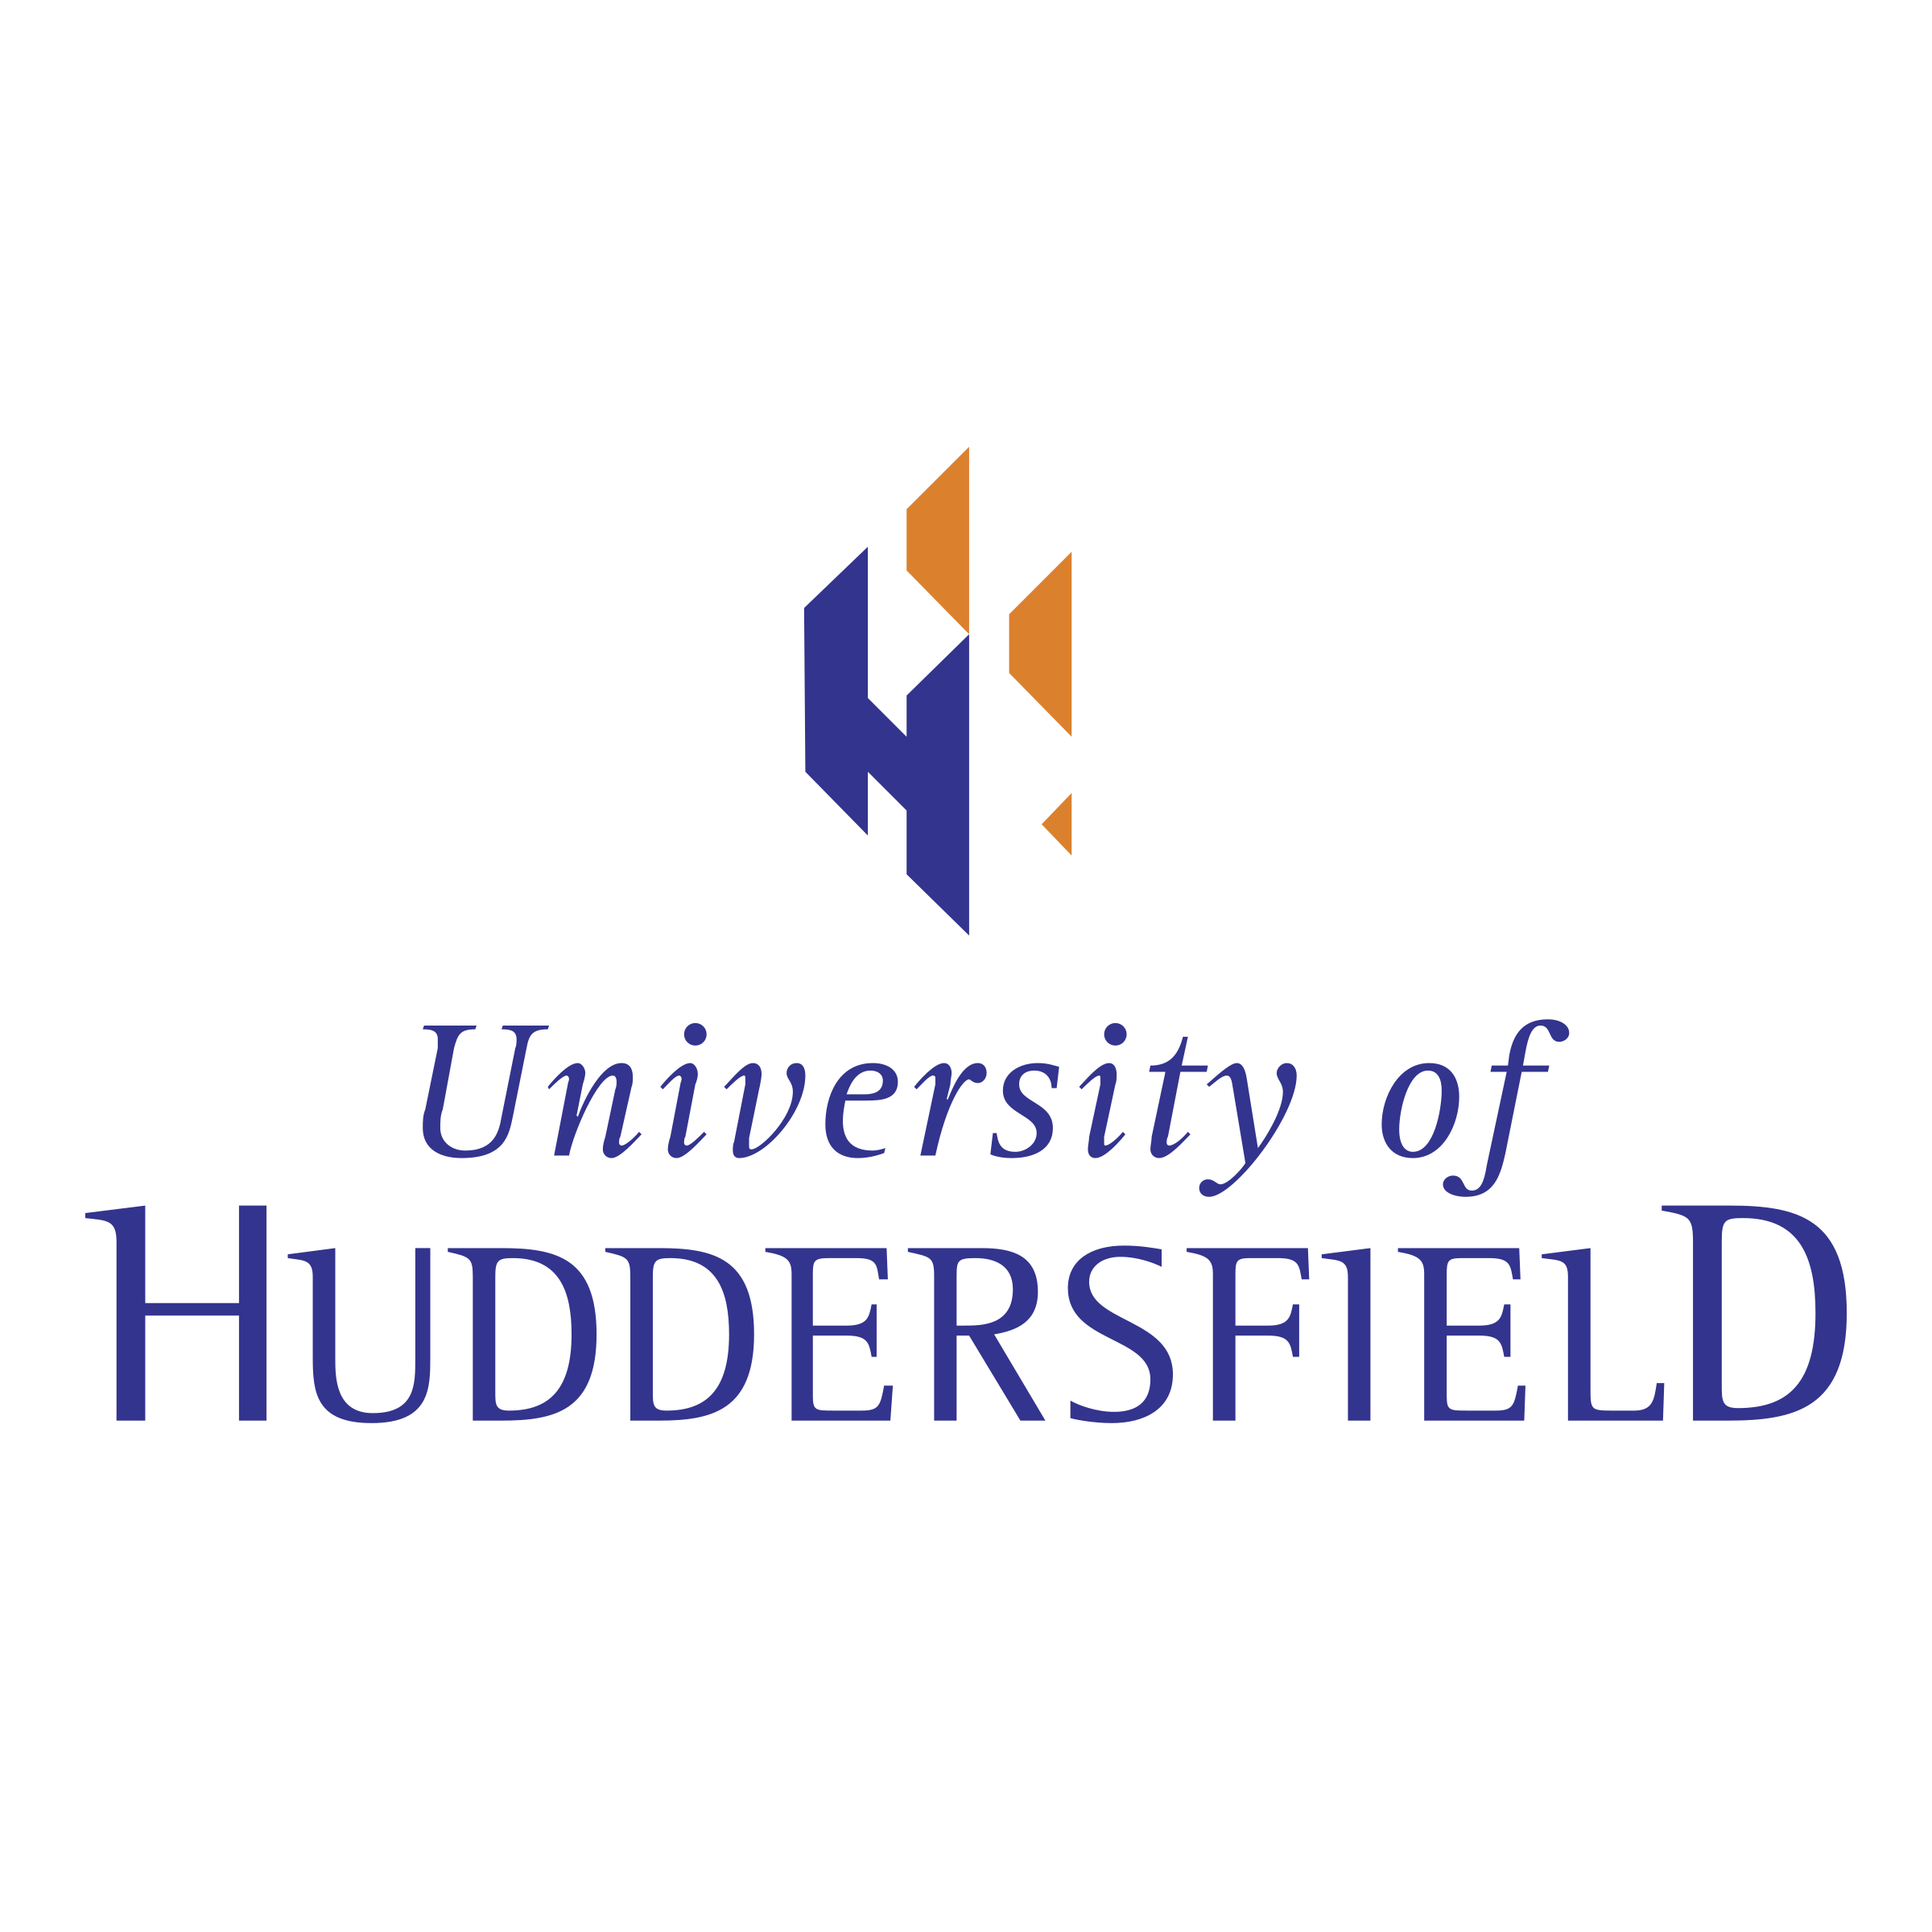 University of Huddersfield